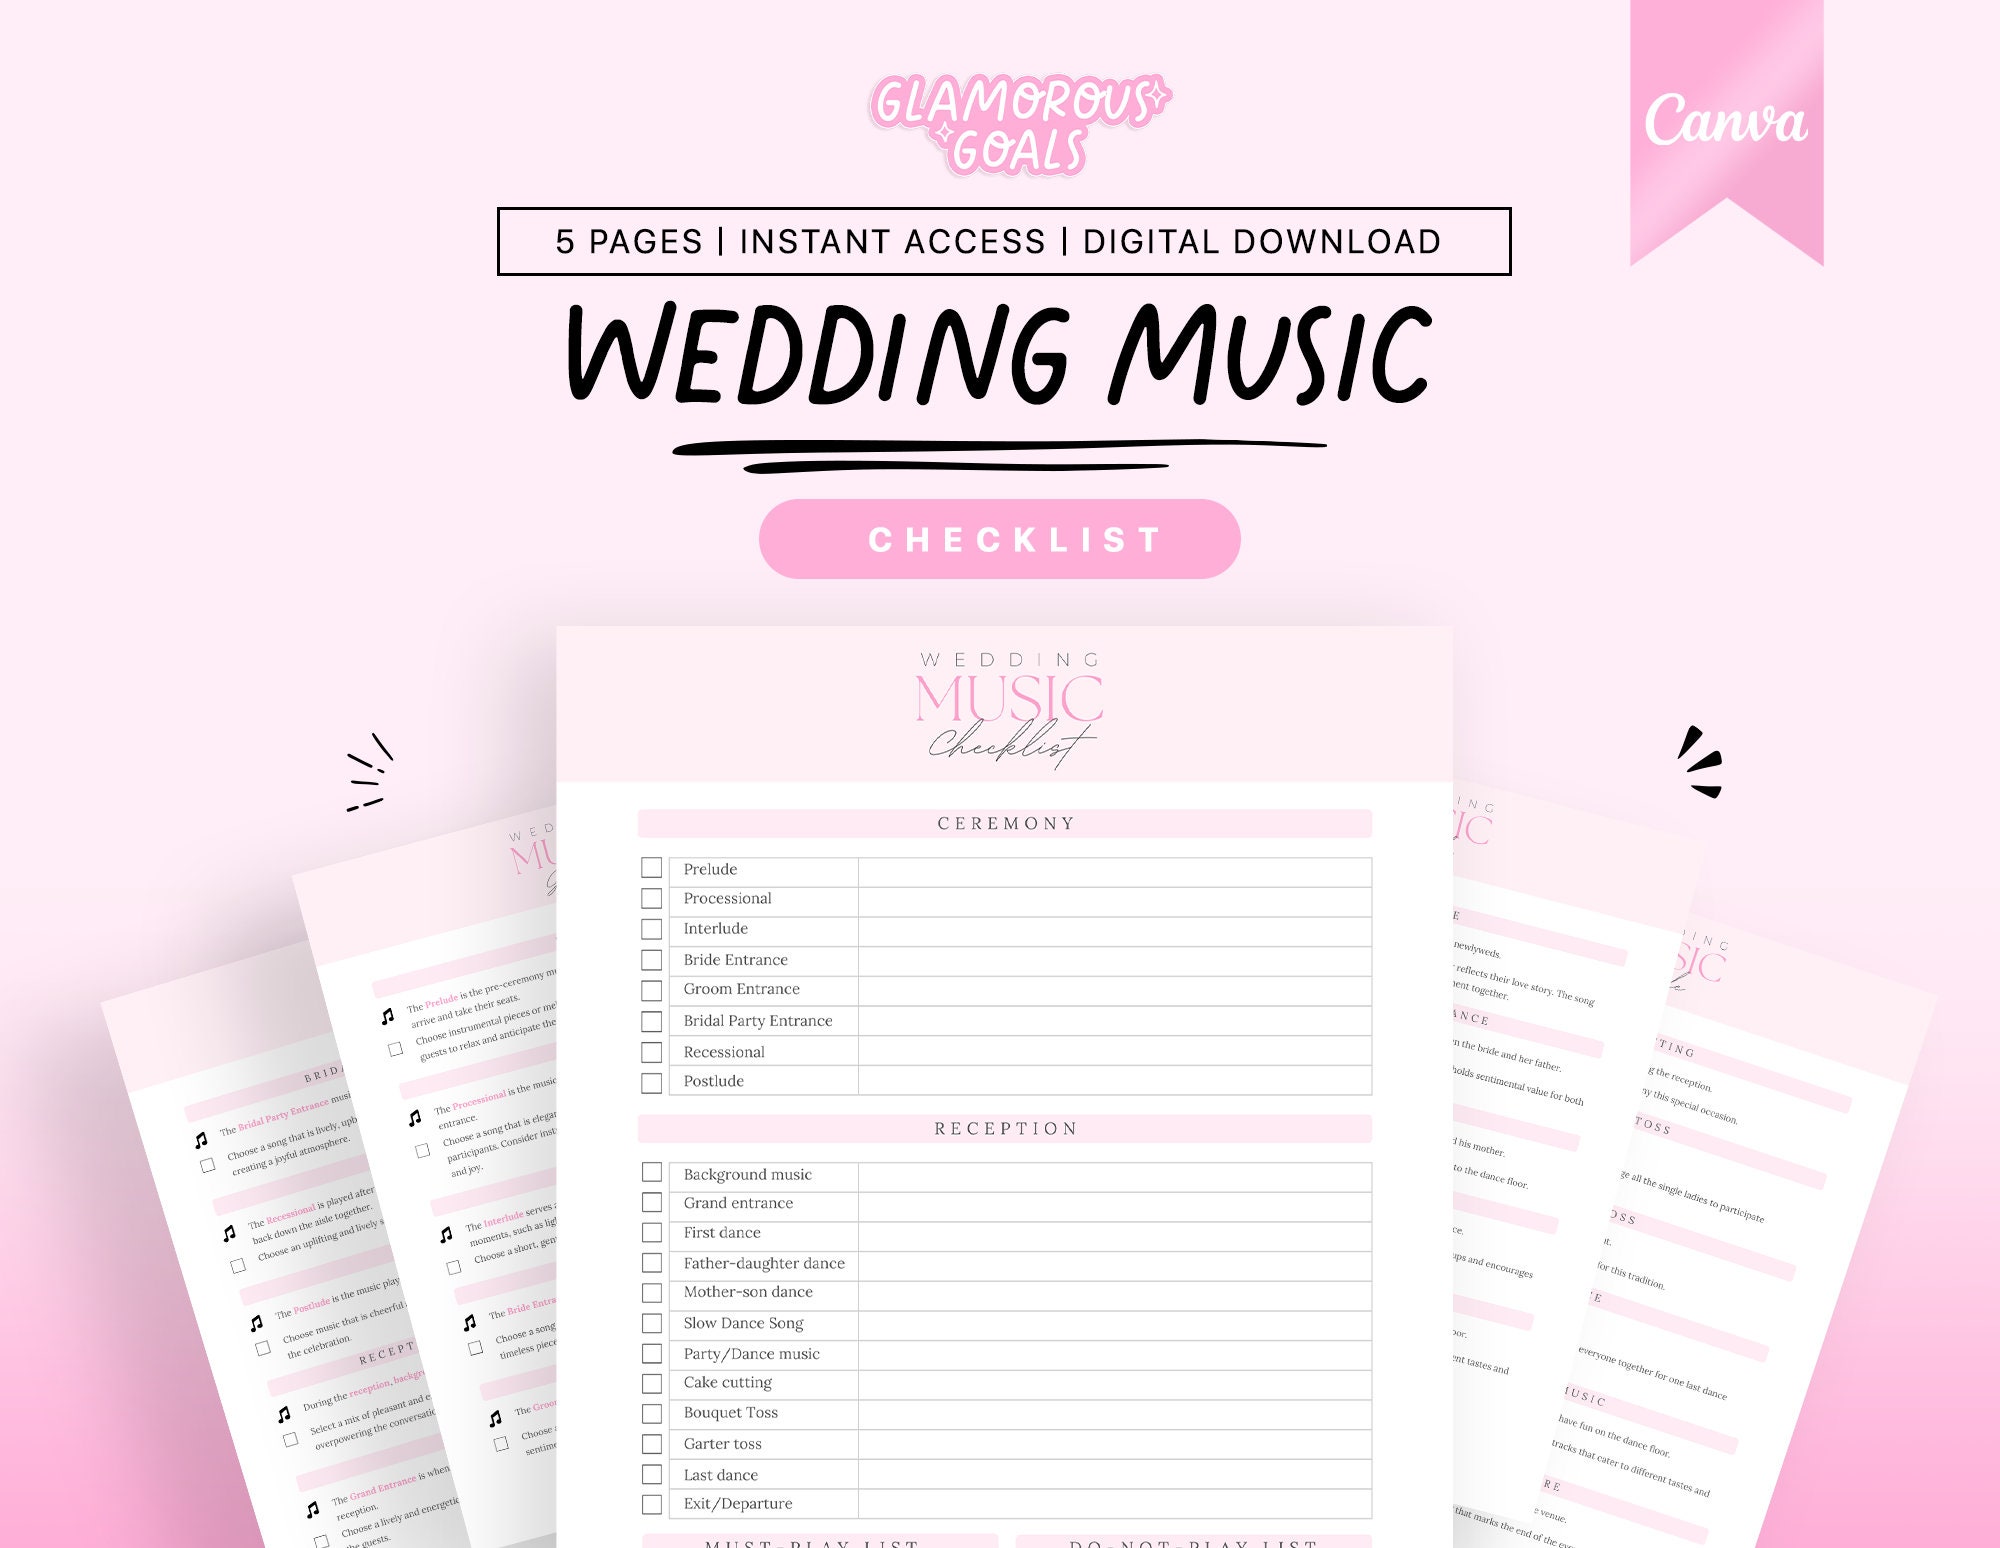 Wedding Song Checklist -  Canada